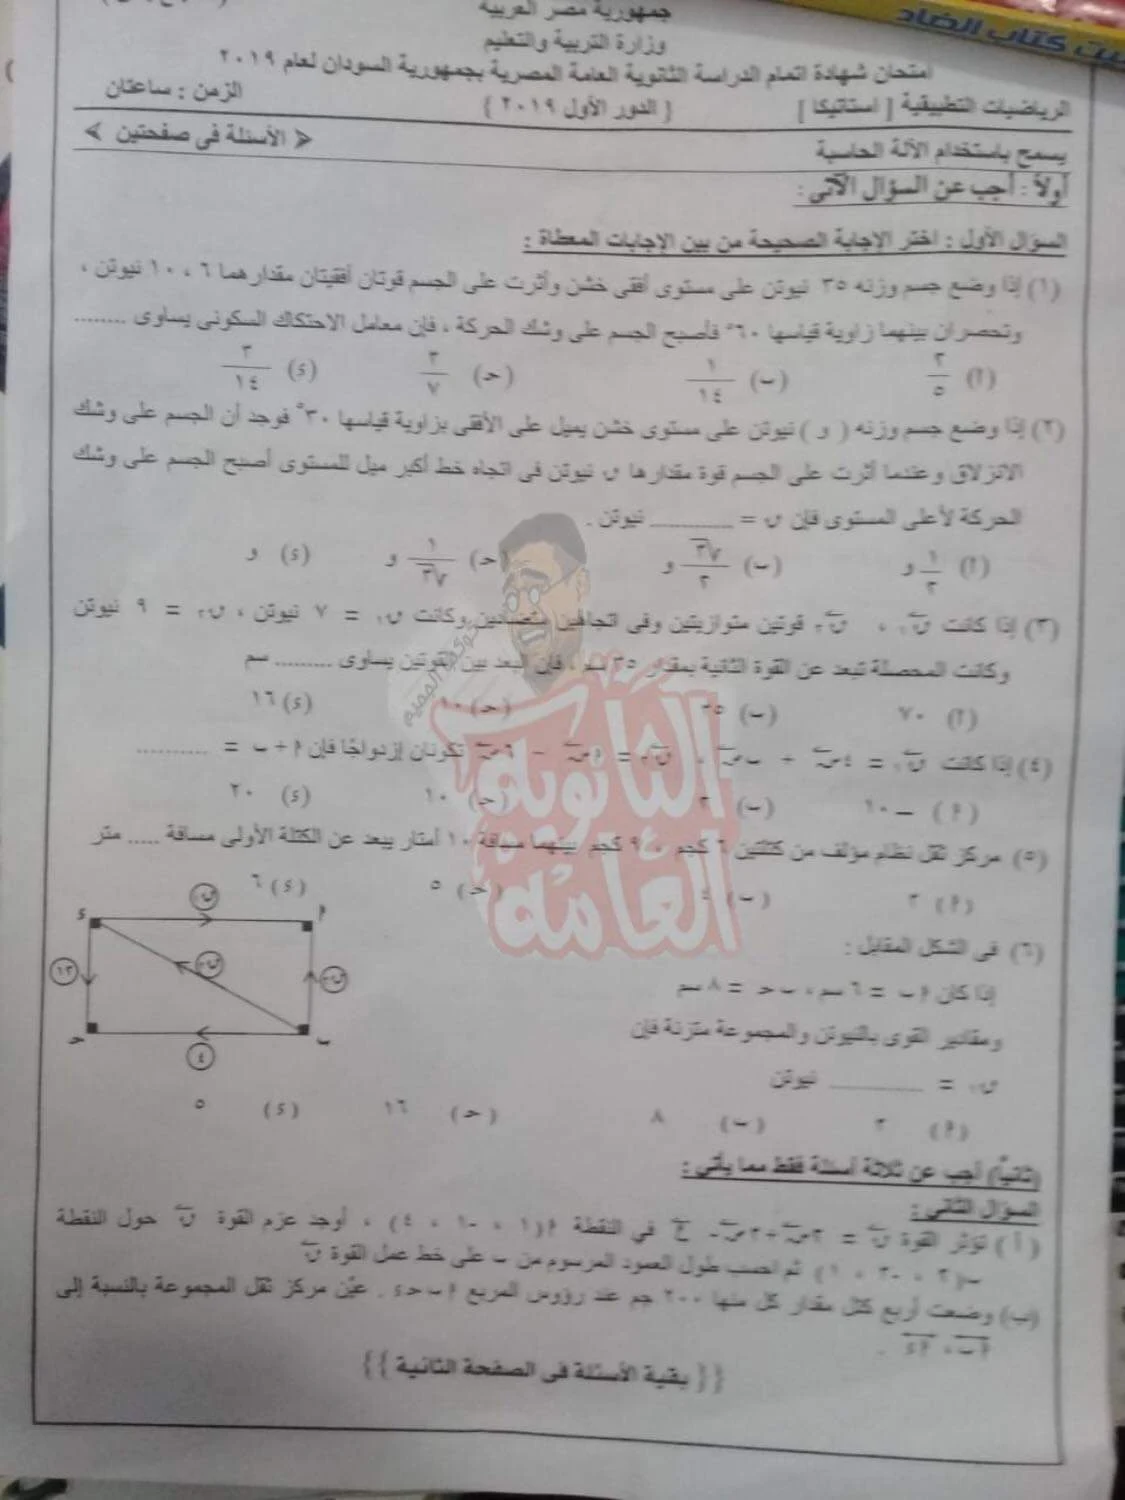 امتحان السودان فى الاستاتيكا للصف الثالث الثانوى 2019 - موقع مدرستى